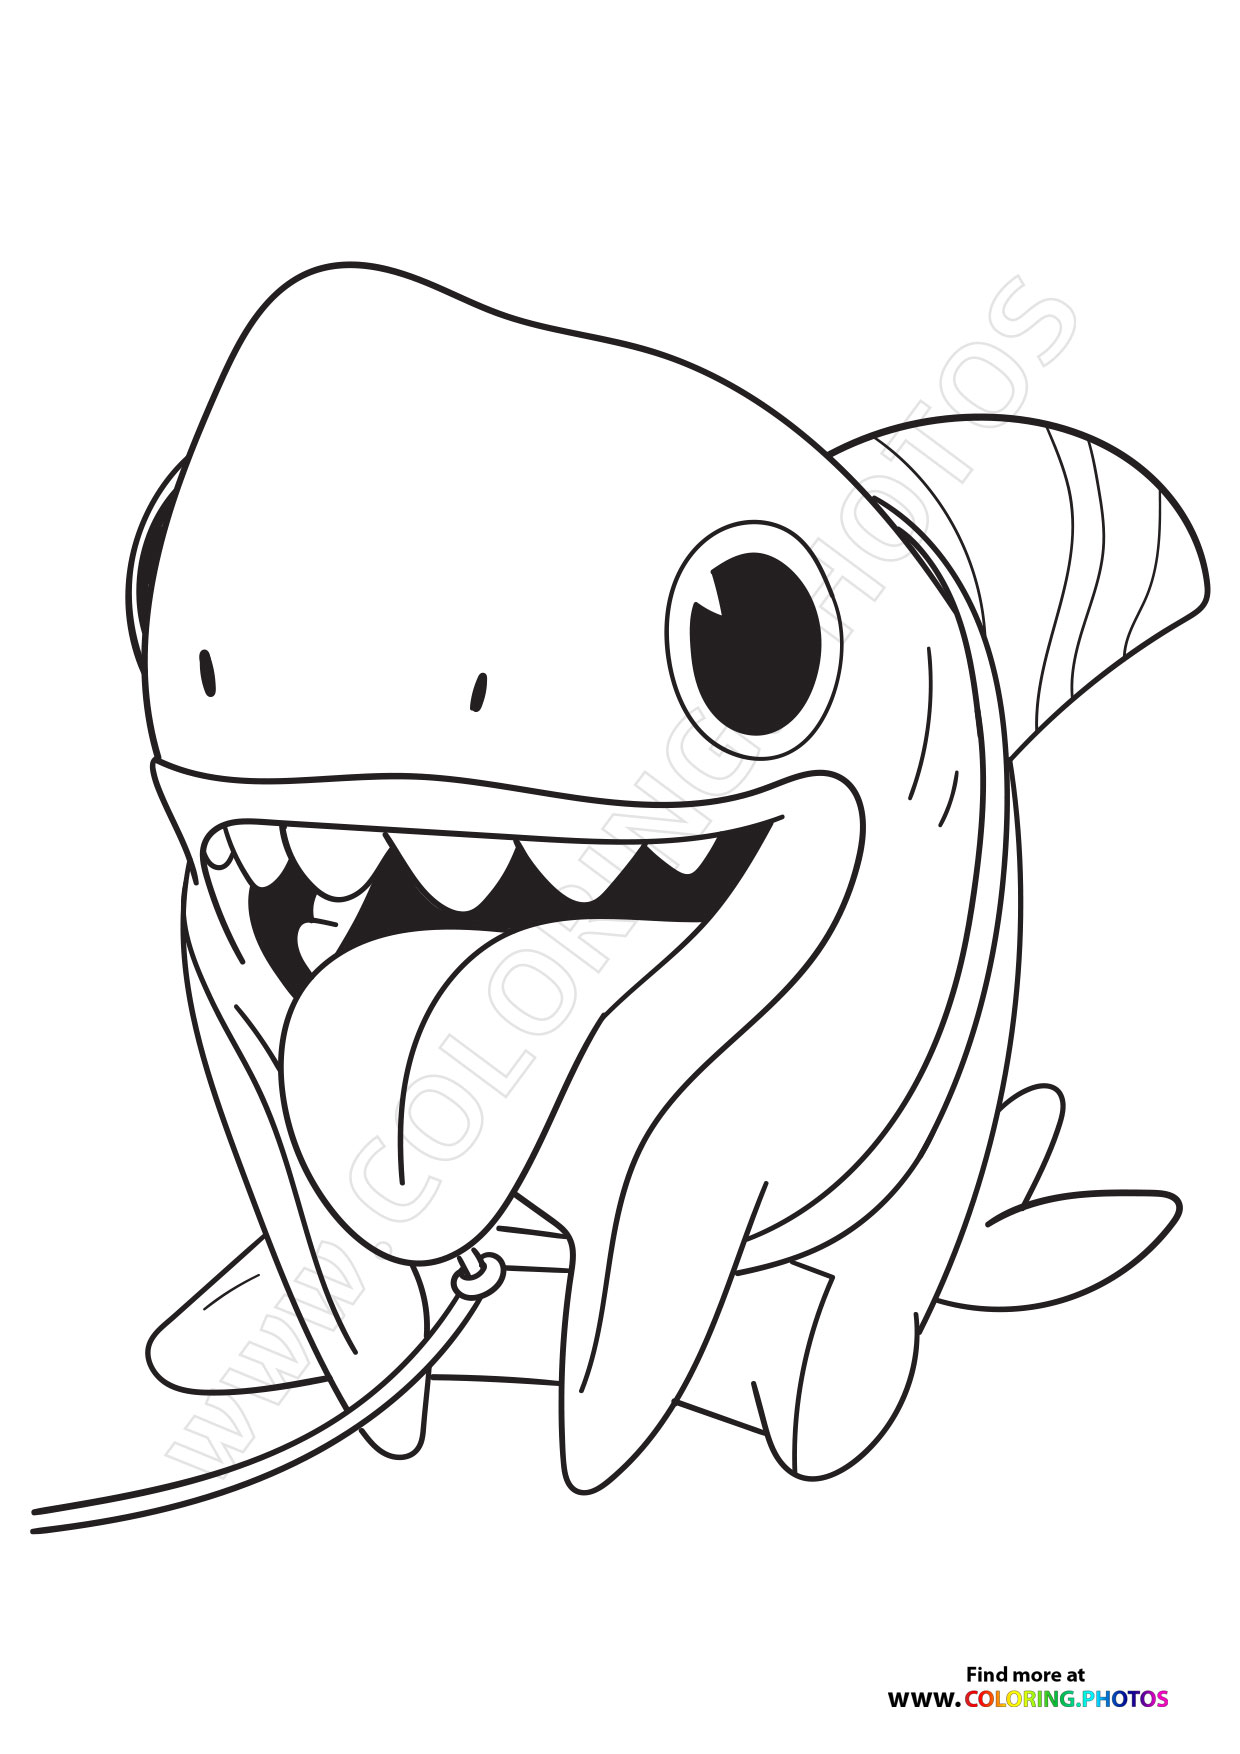 Sharkdog coloring page digital download